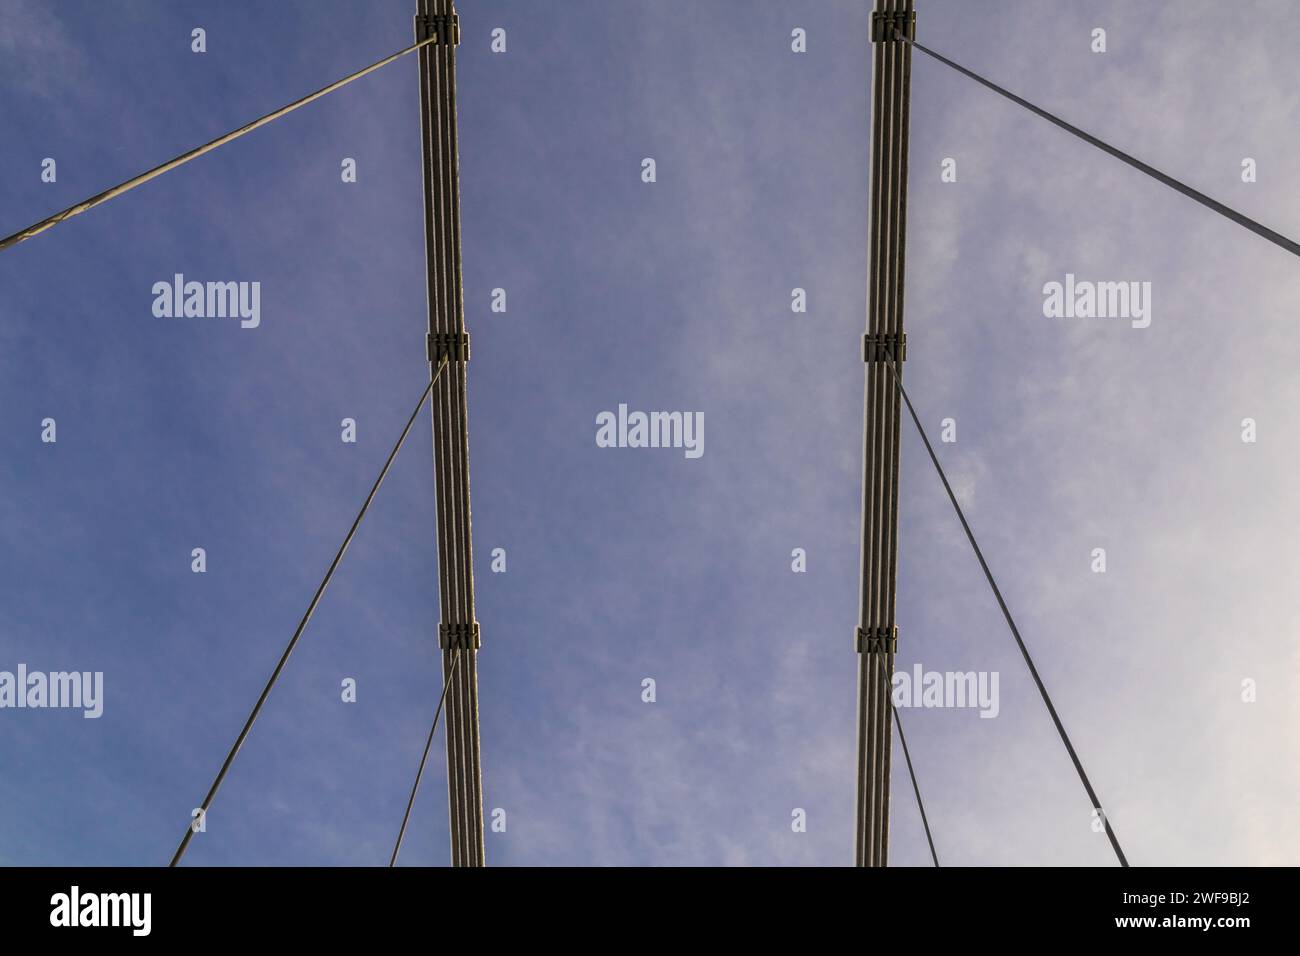 Skybound Symphony: Abstrakte Winkel von hängenden Stahlseilen erzeugen einen geometrischen Tanz, der Erde und Himmel in einer Linienbrücke verbindet Stockfoto